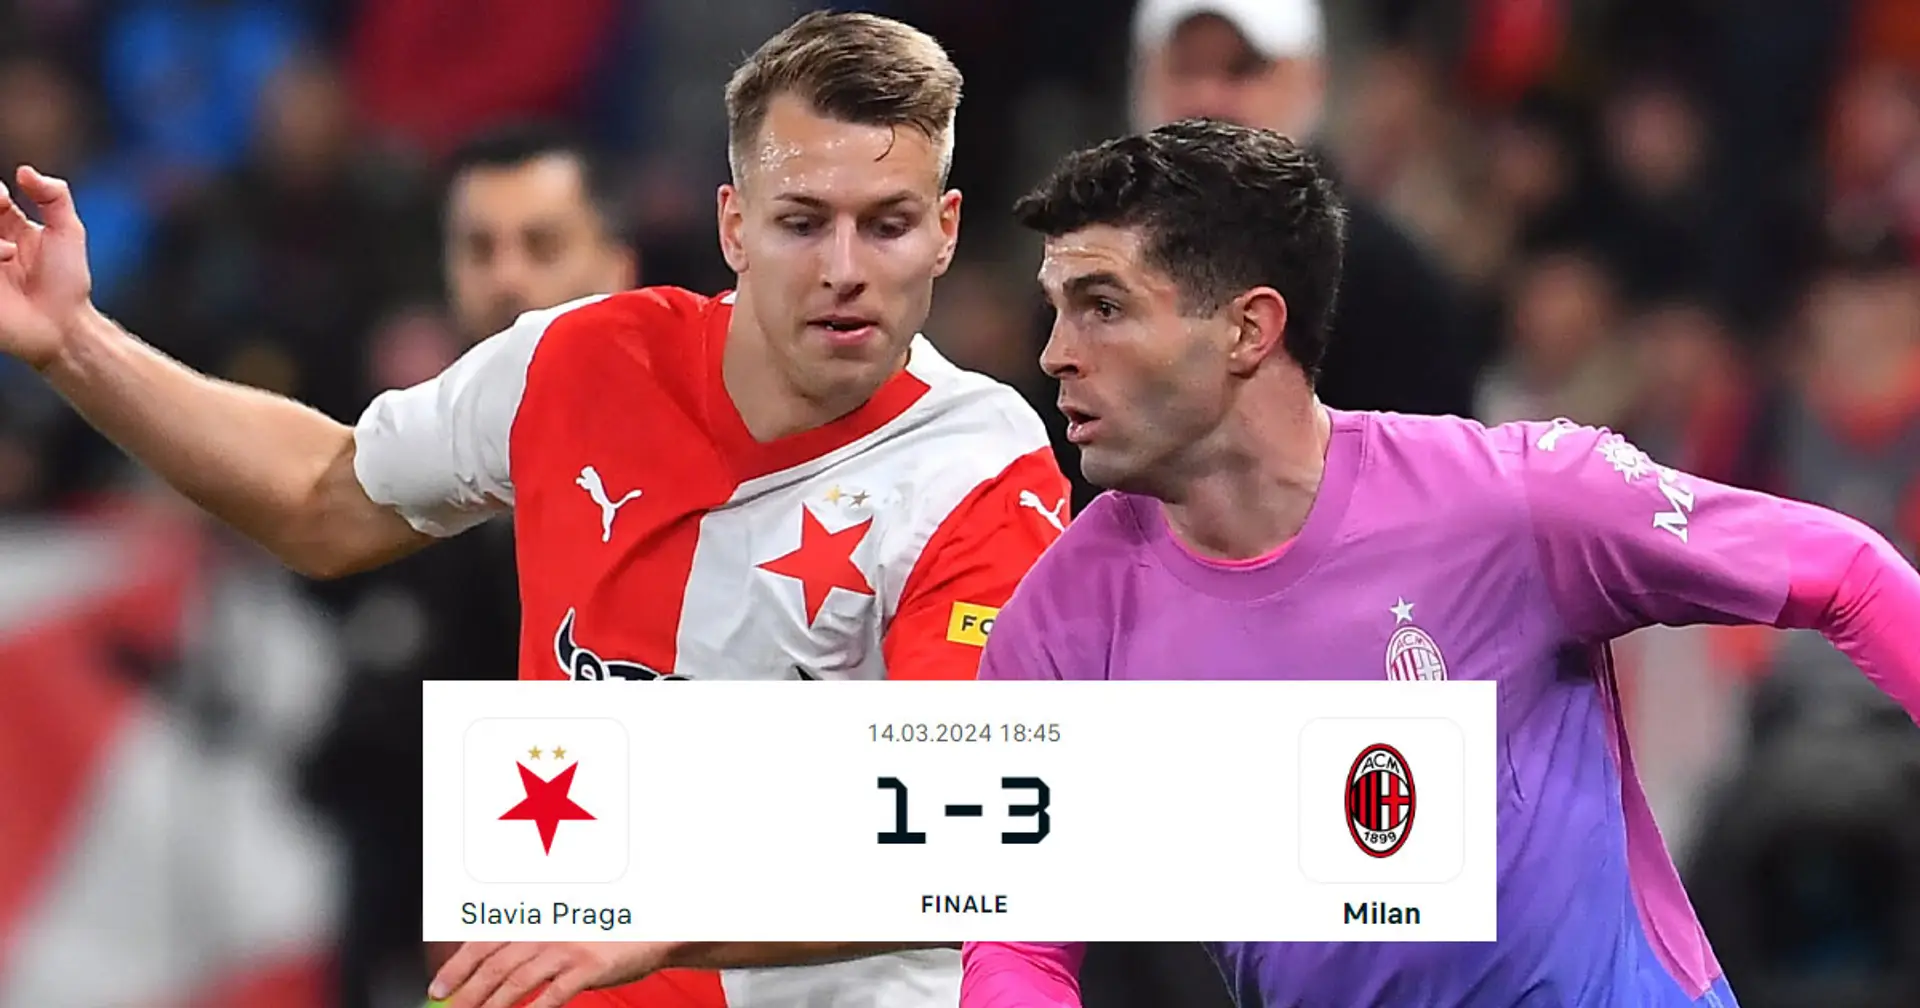 Il Milan vola ai Quarti di Europa League con 3 gol allo Slavia: statistiche, tabellino e sintesi della partita